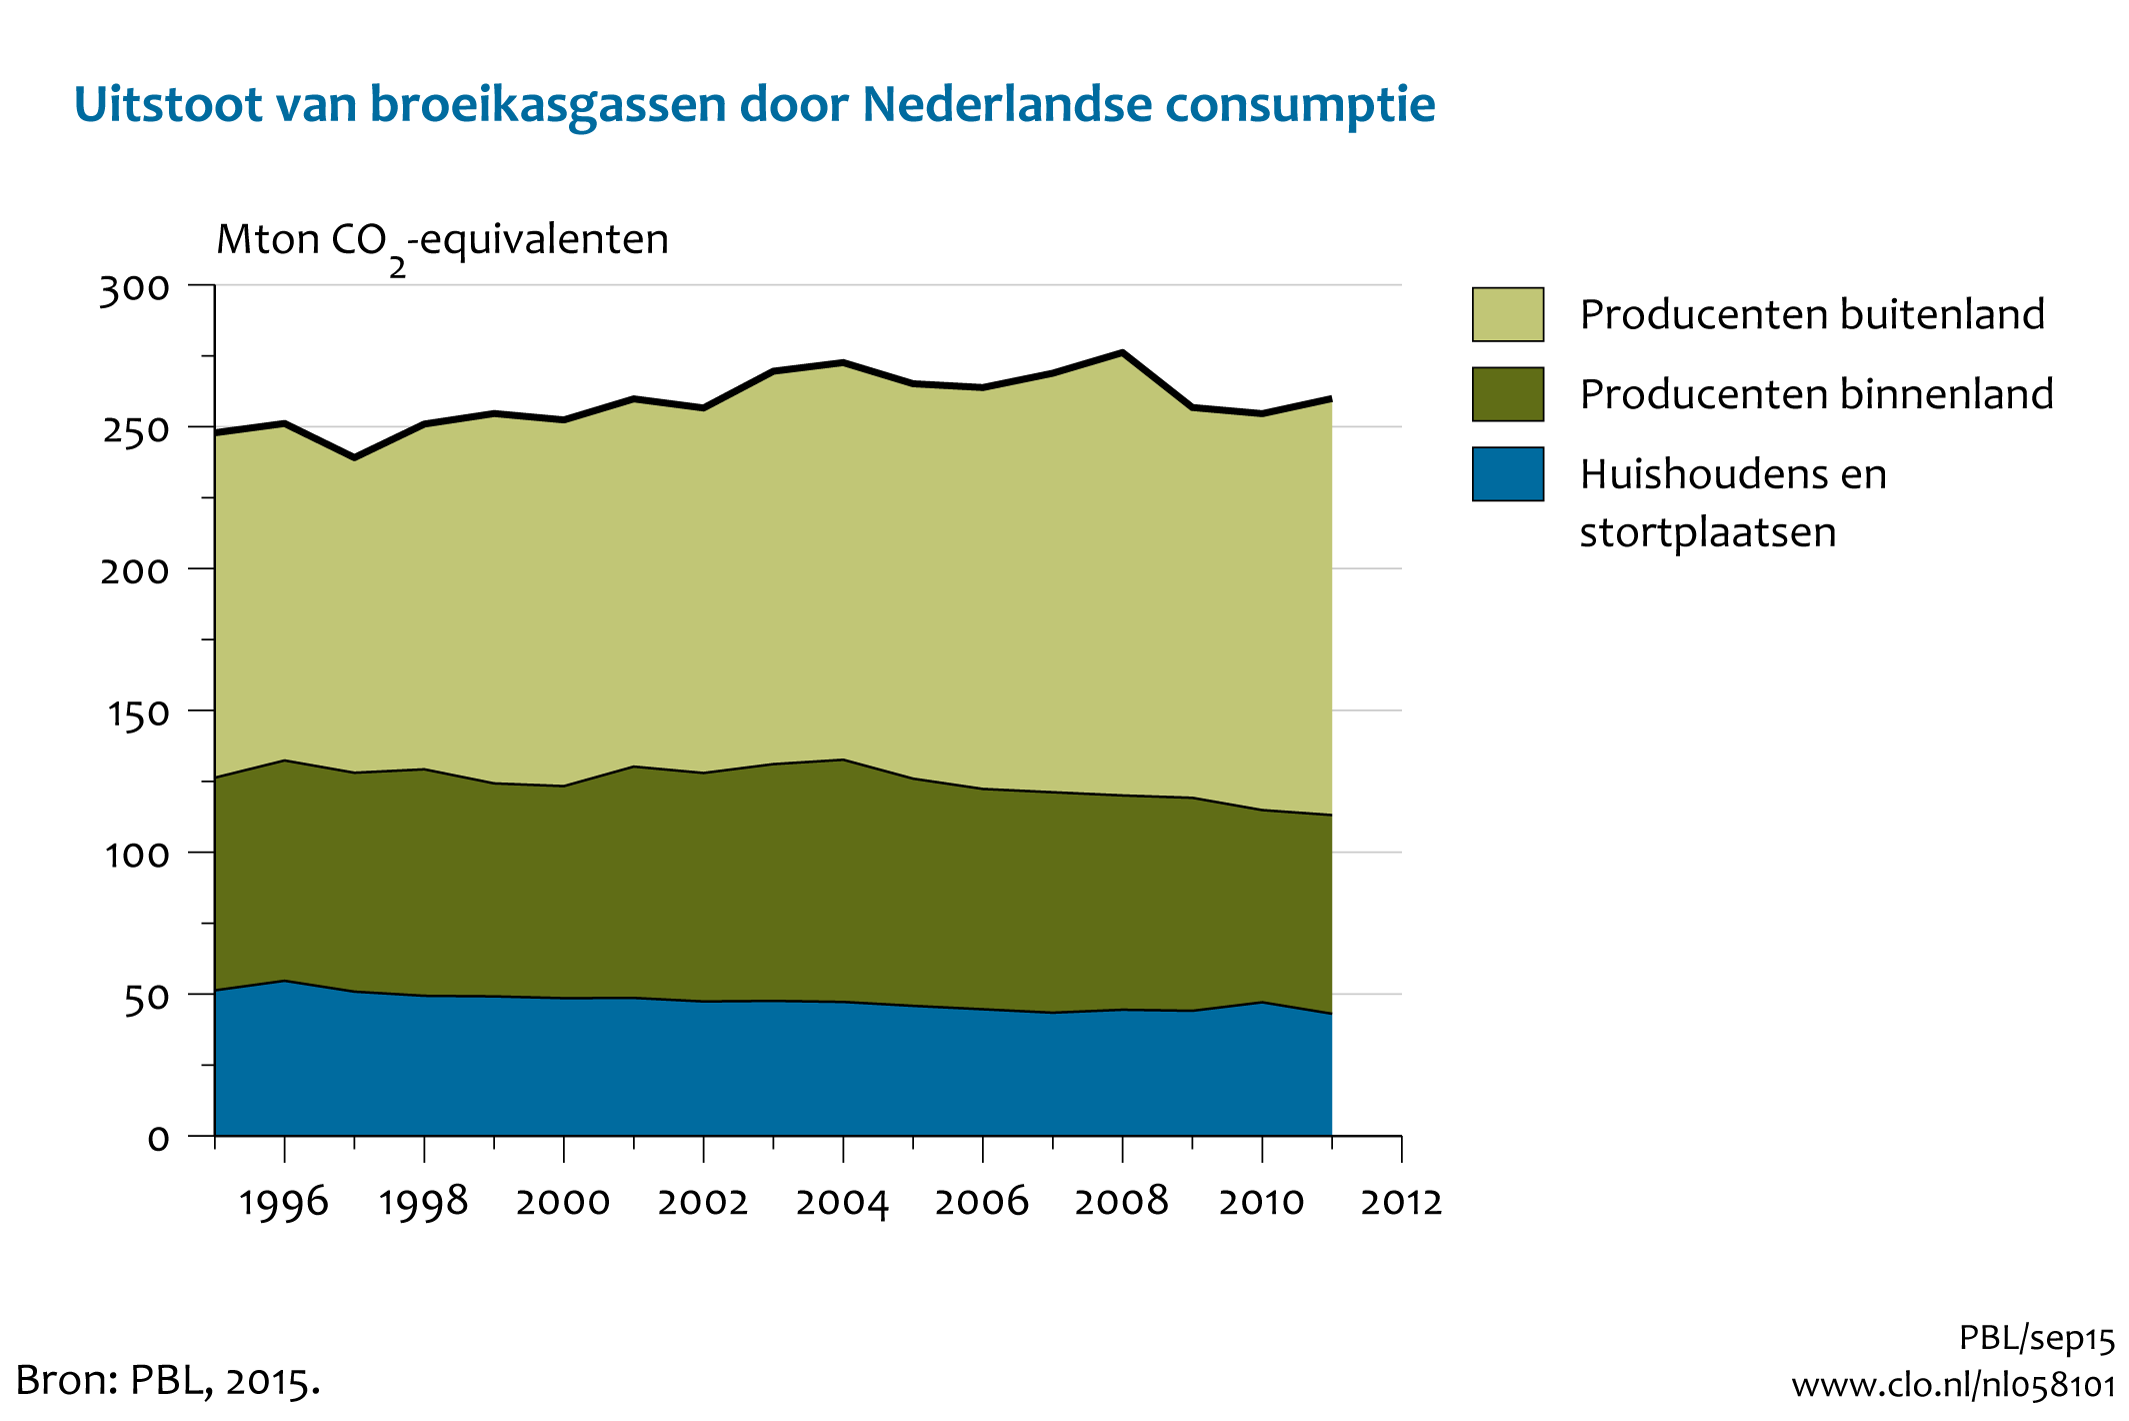 Figuur Uitstoot van broeikasgassen door Nederlandse consumptie. In de rest van de tekst wordt deze figuur uitgebreider uitgelegd.